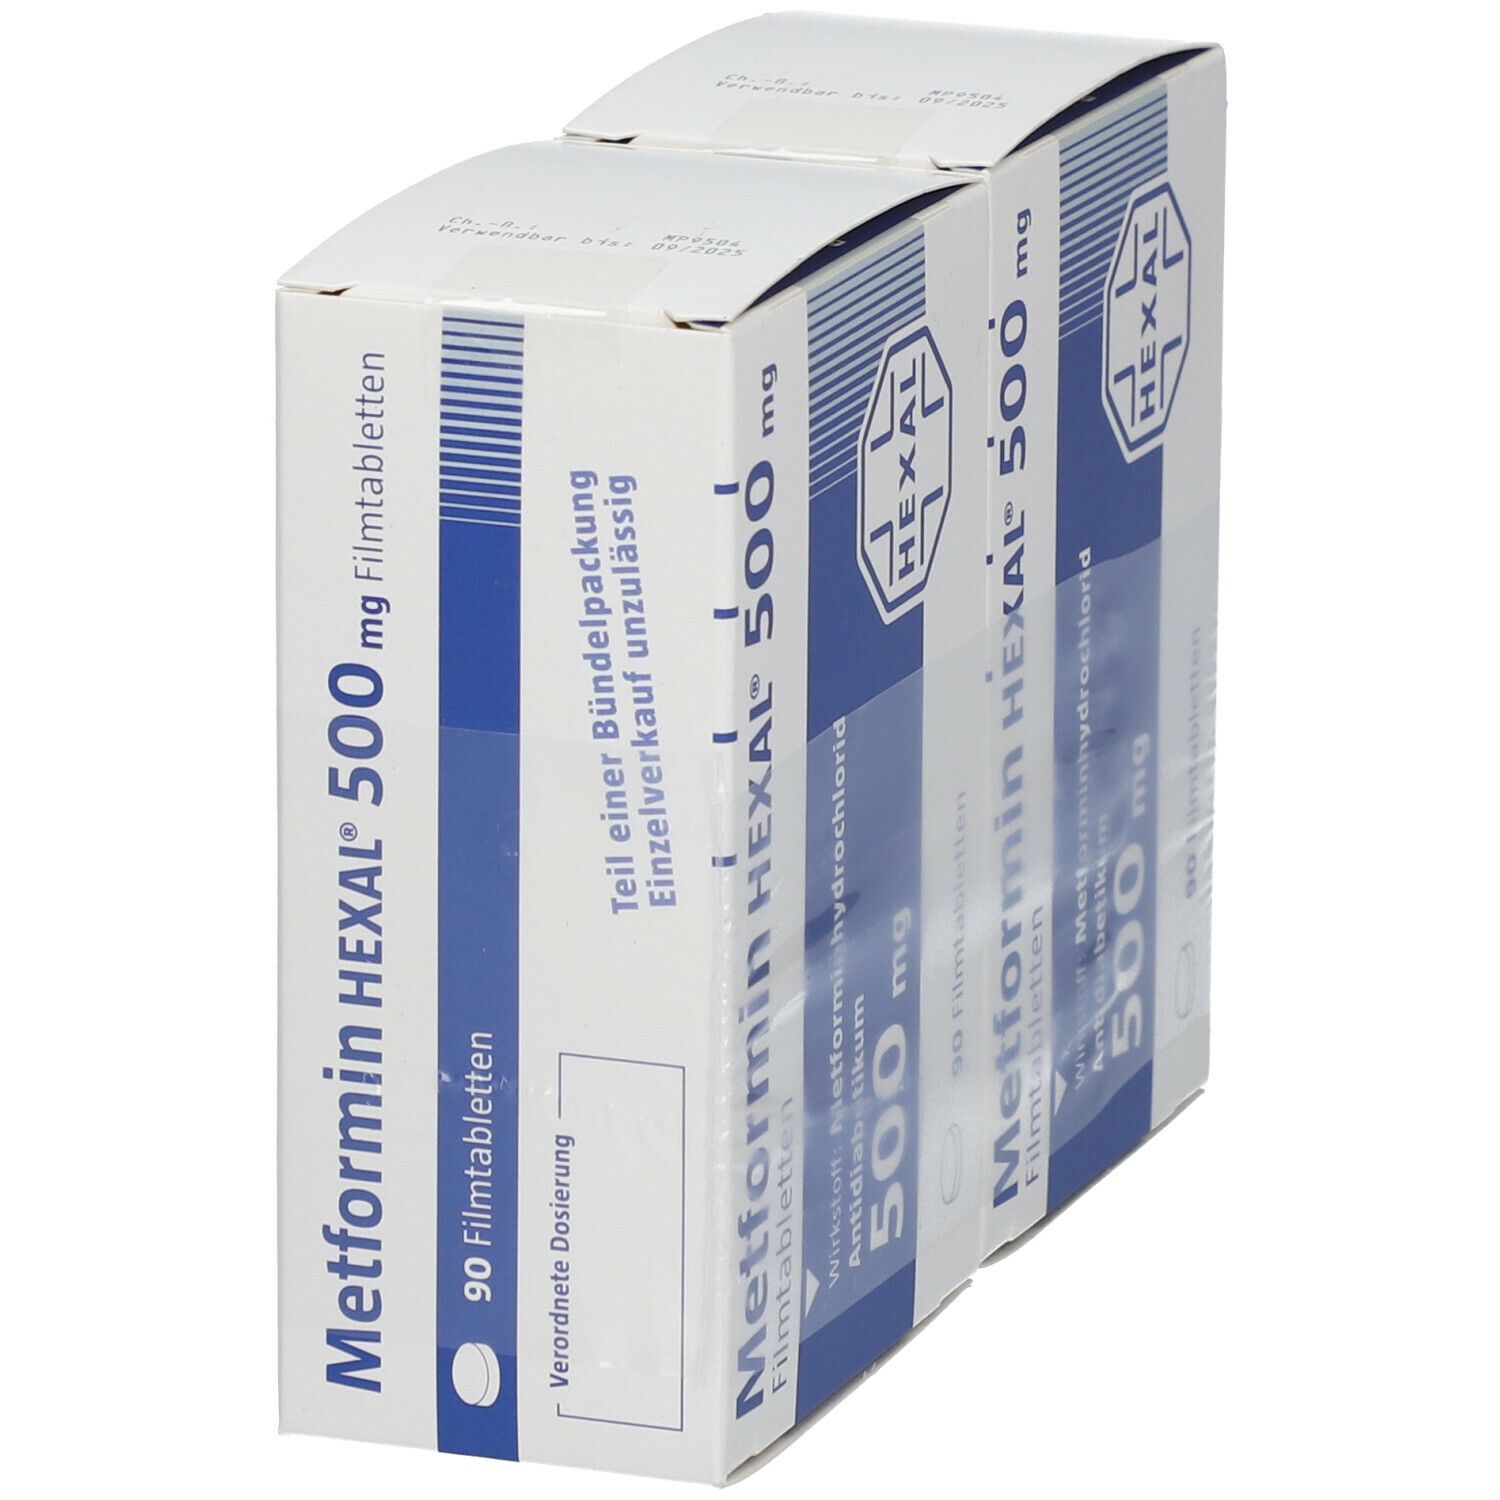 Metformin HEXAL® 500 mg